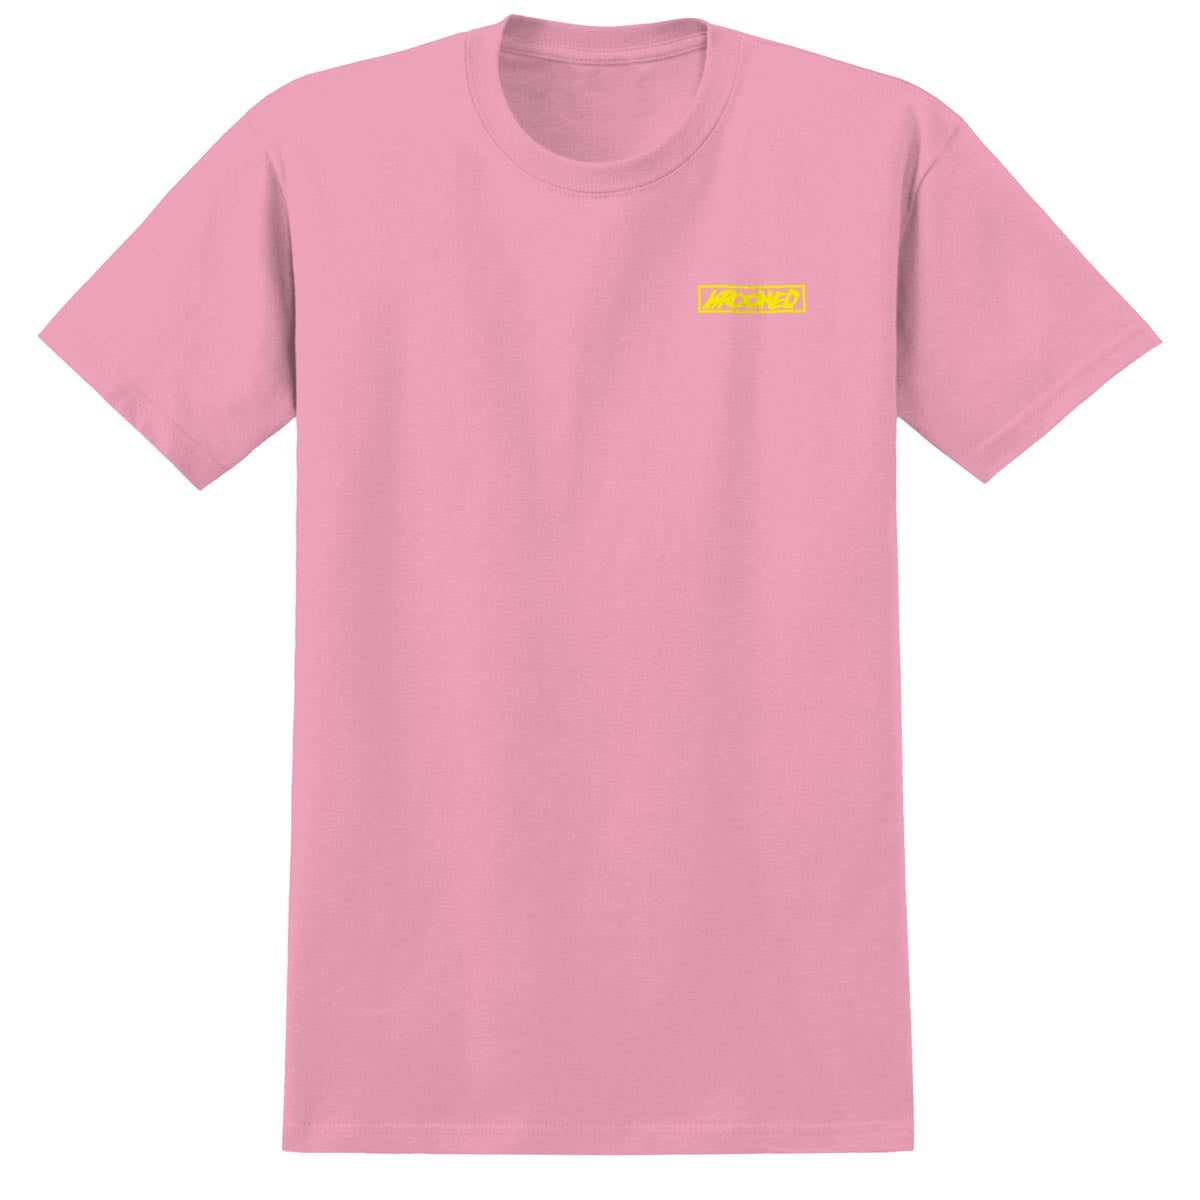 Krooked Moonsmile Raw T-Shirt - Light Pink/Yellow image 2